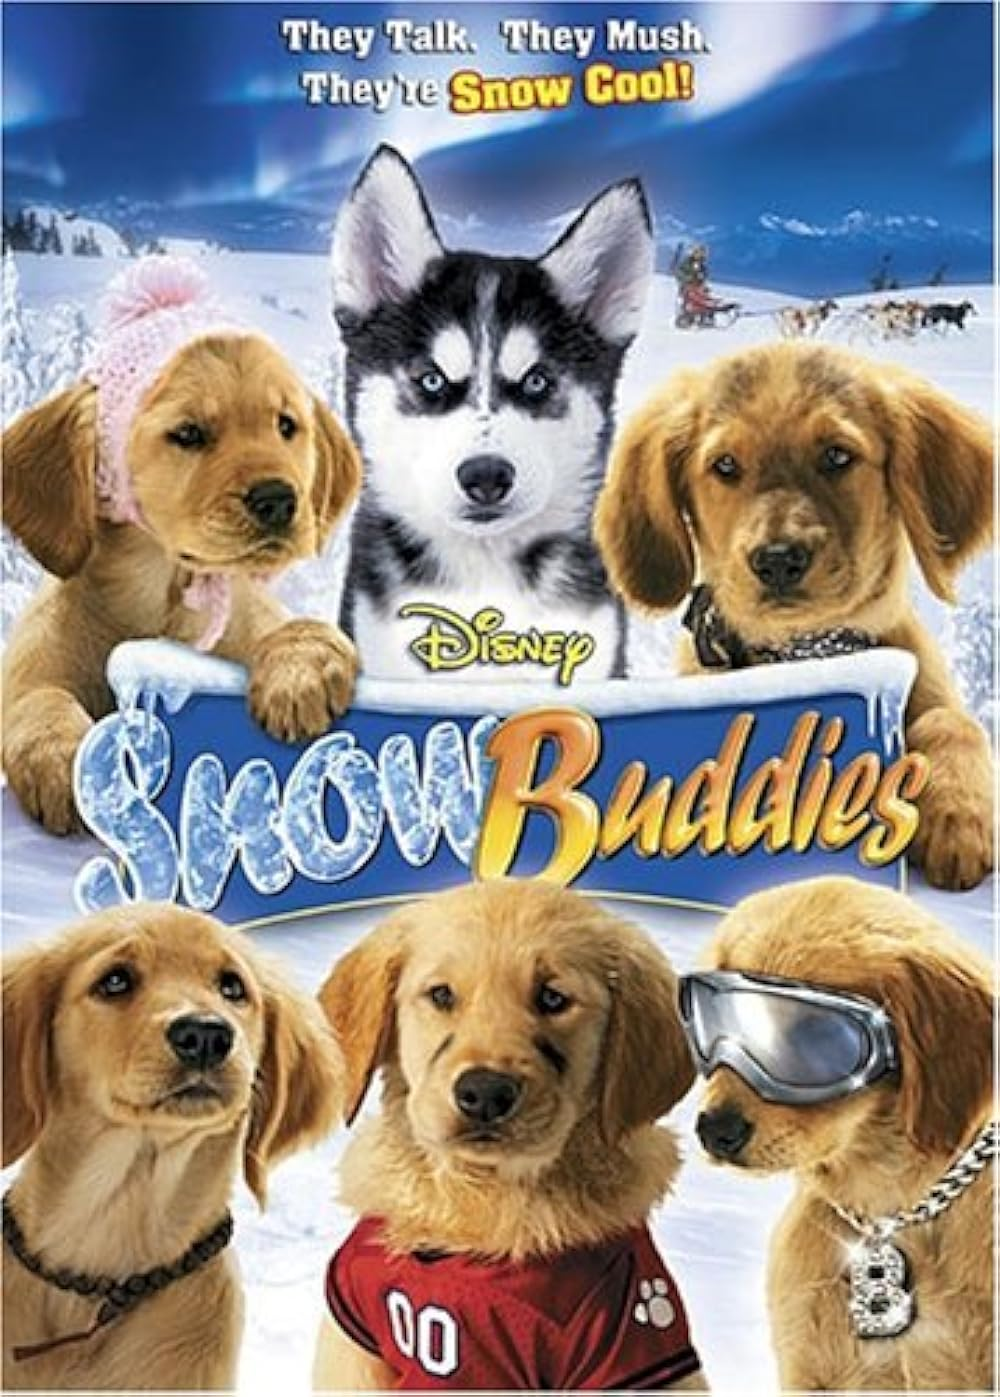 Best Christmas animated movies - Snow Buddies